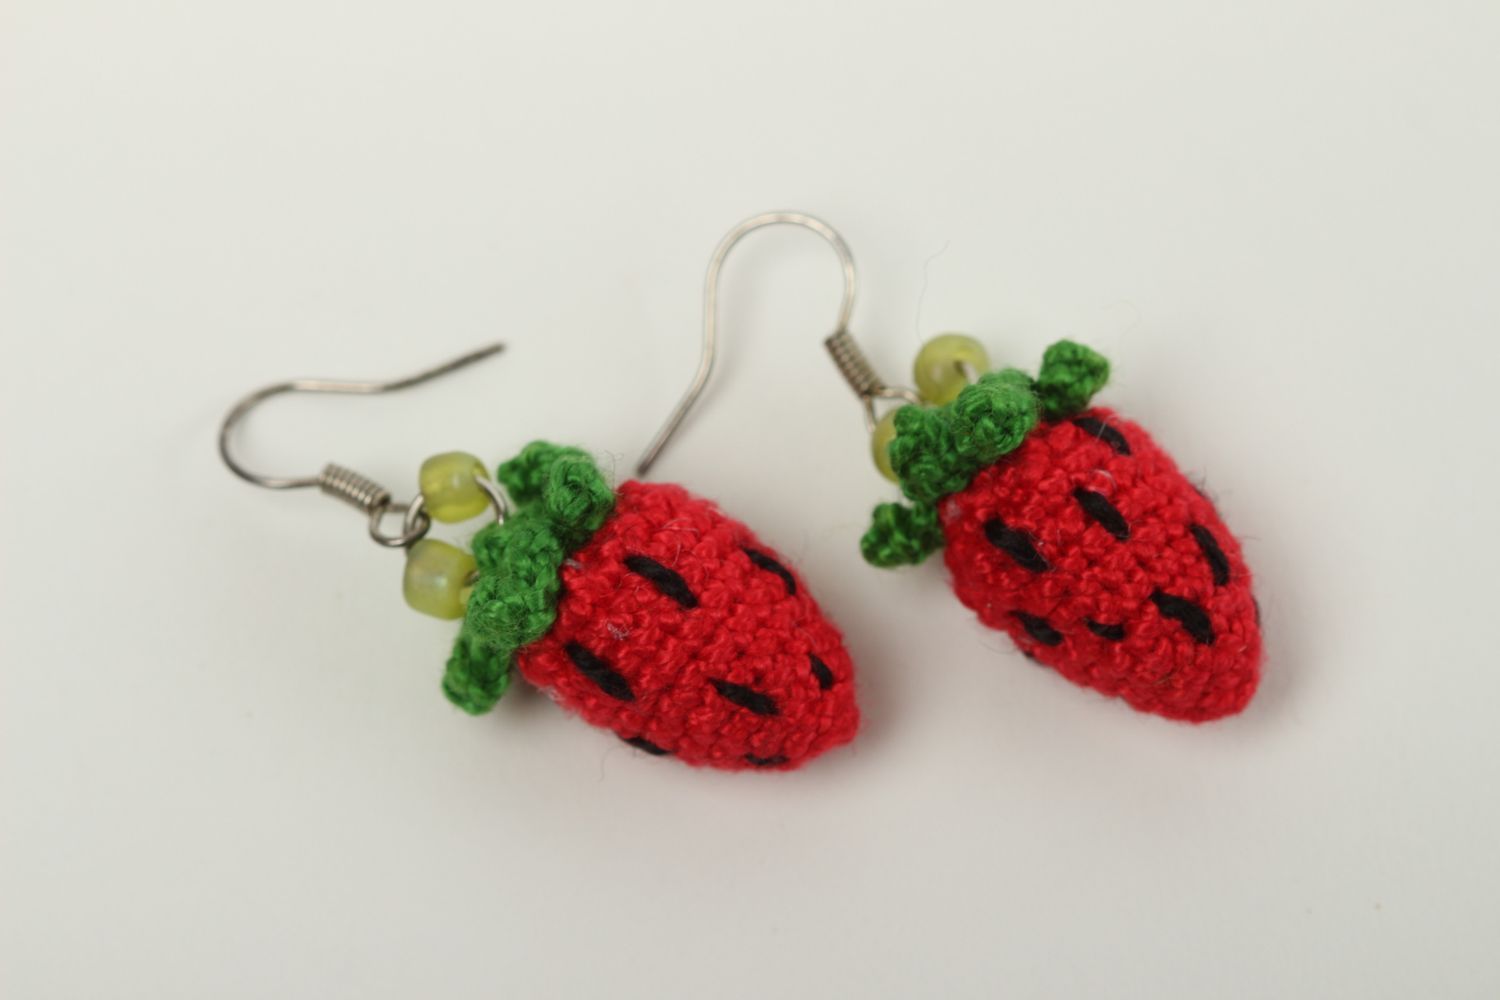 Handmade earrings designer jewelry gift ideas unusual earrings crochet accessory photo 2